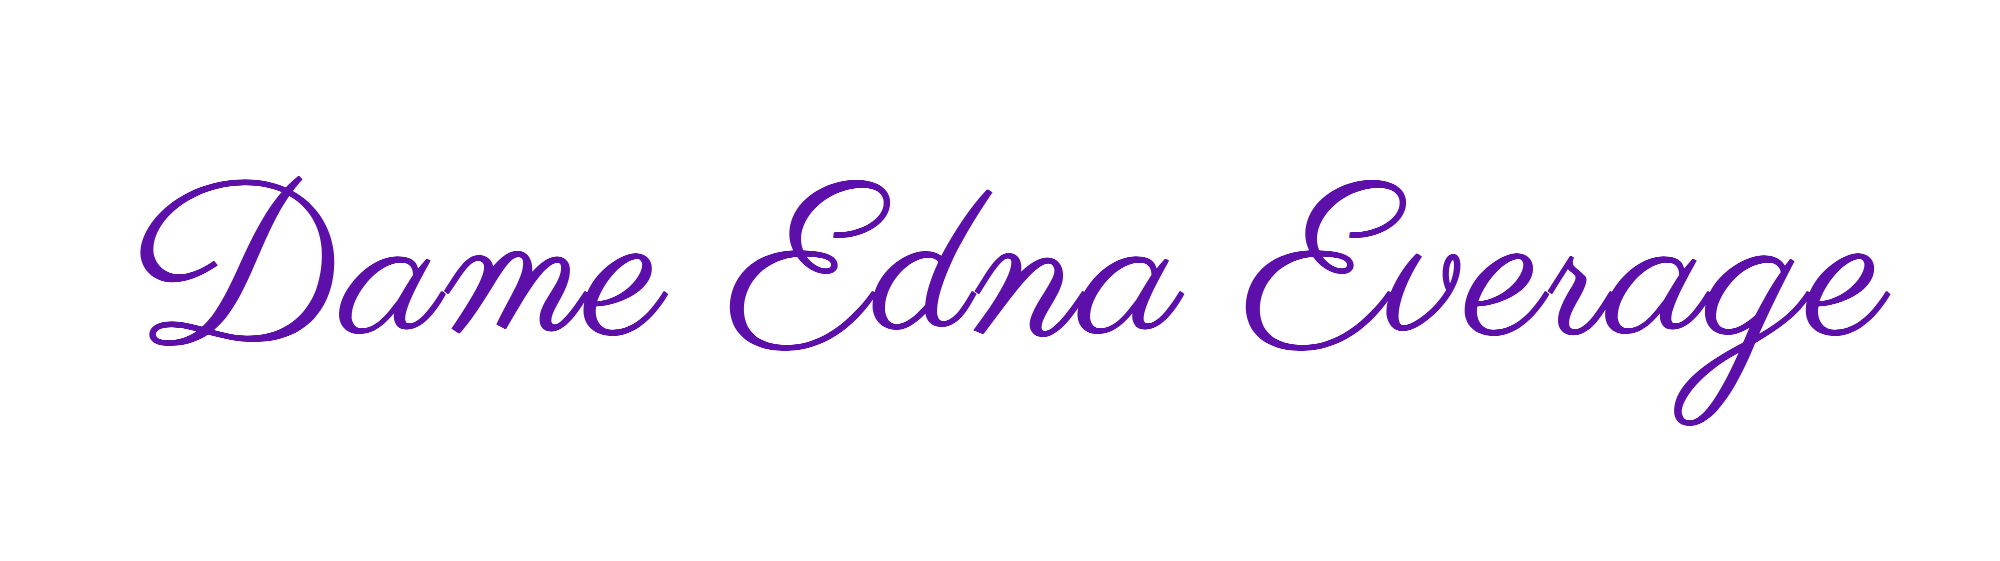 Dame Edna Everage: The Website